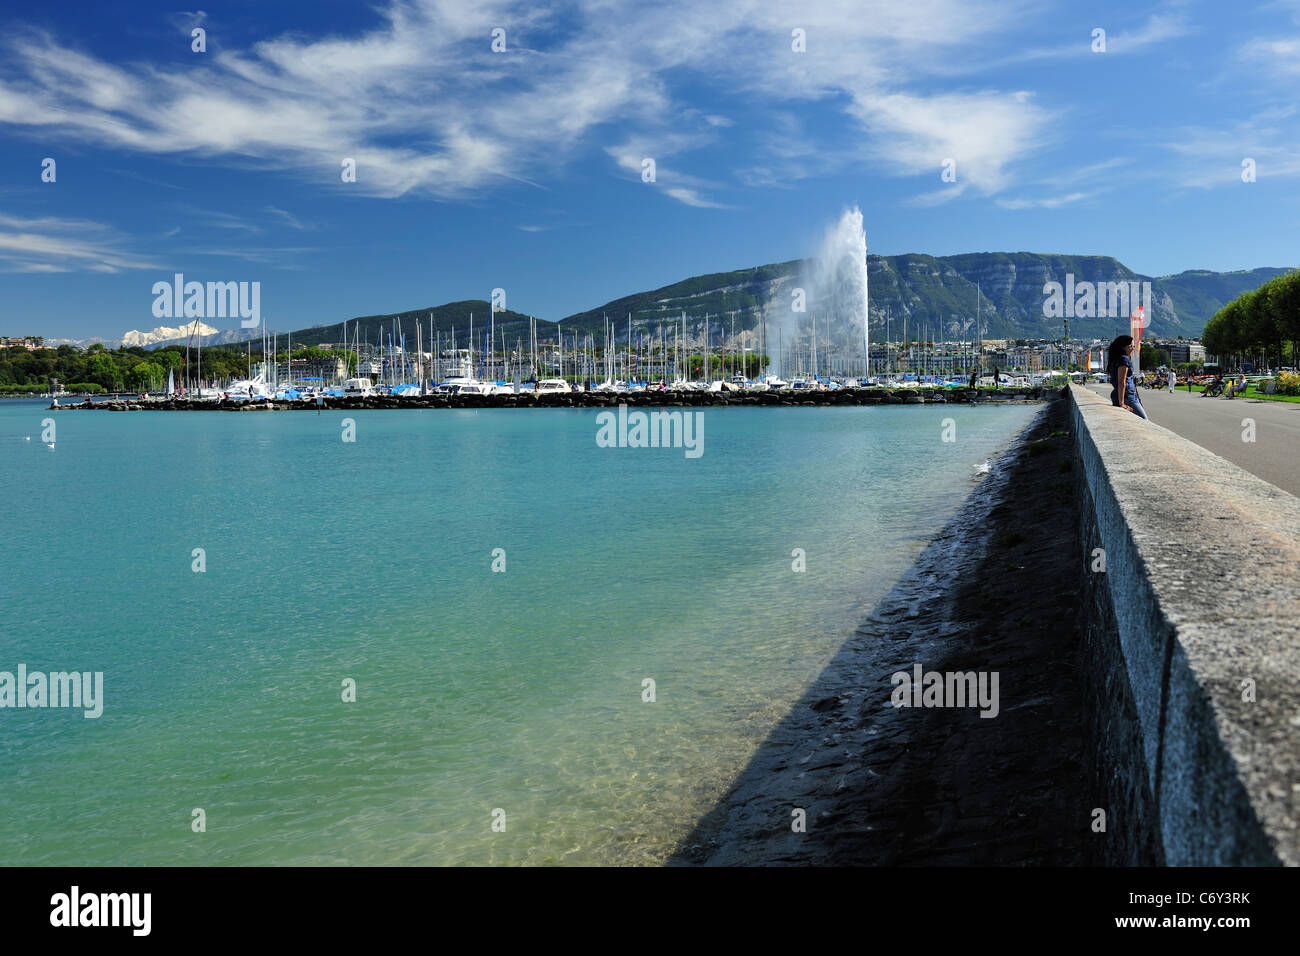 Le lac de Genève, Suisse Lac Léman bleu aka, l'eau avec la fontaine d'eau  et des bateaux avec les montagnes et le ciel bleu Photo Stock - Alamy